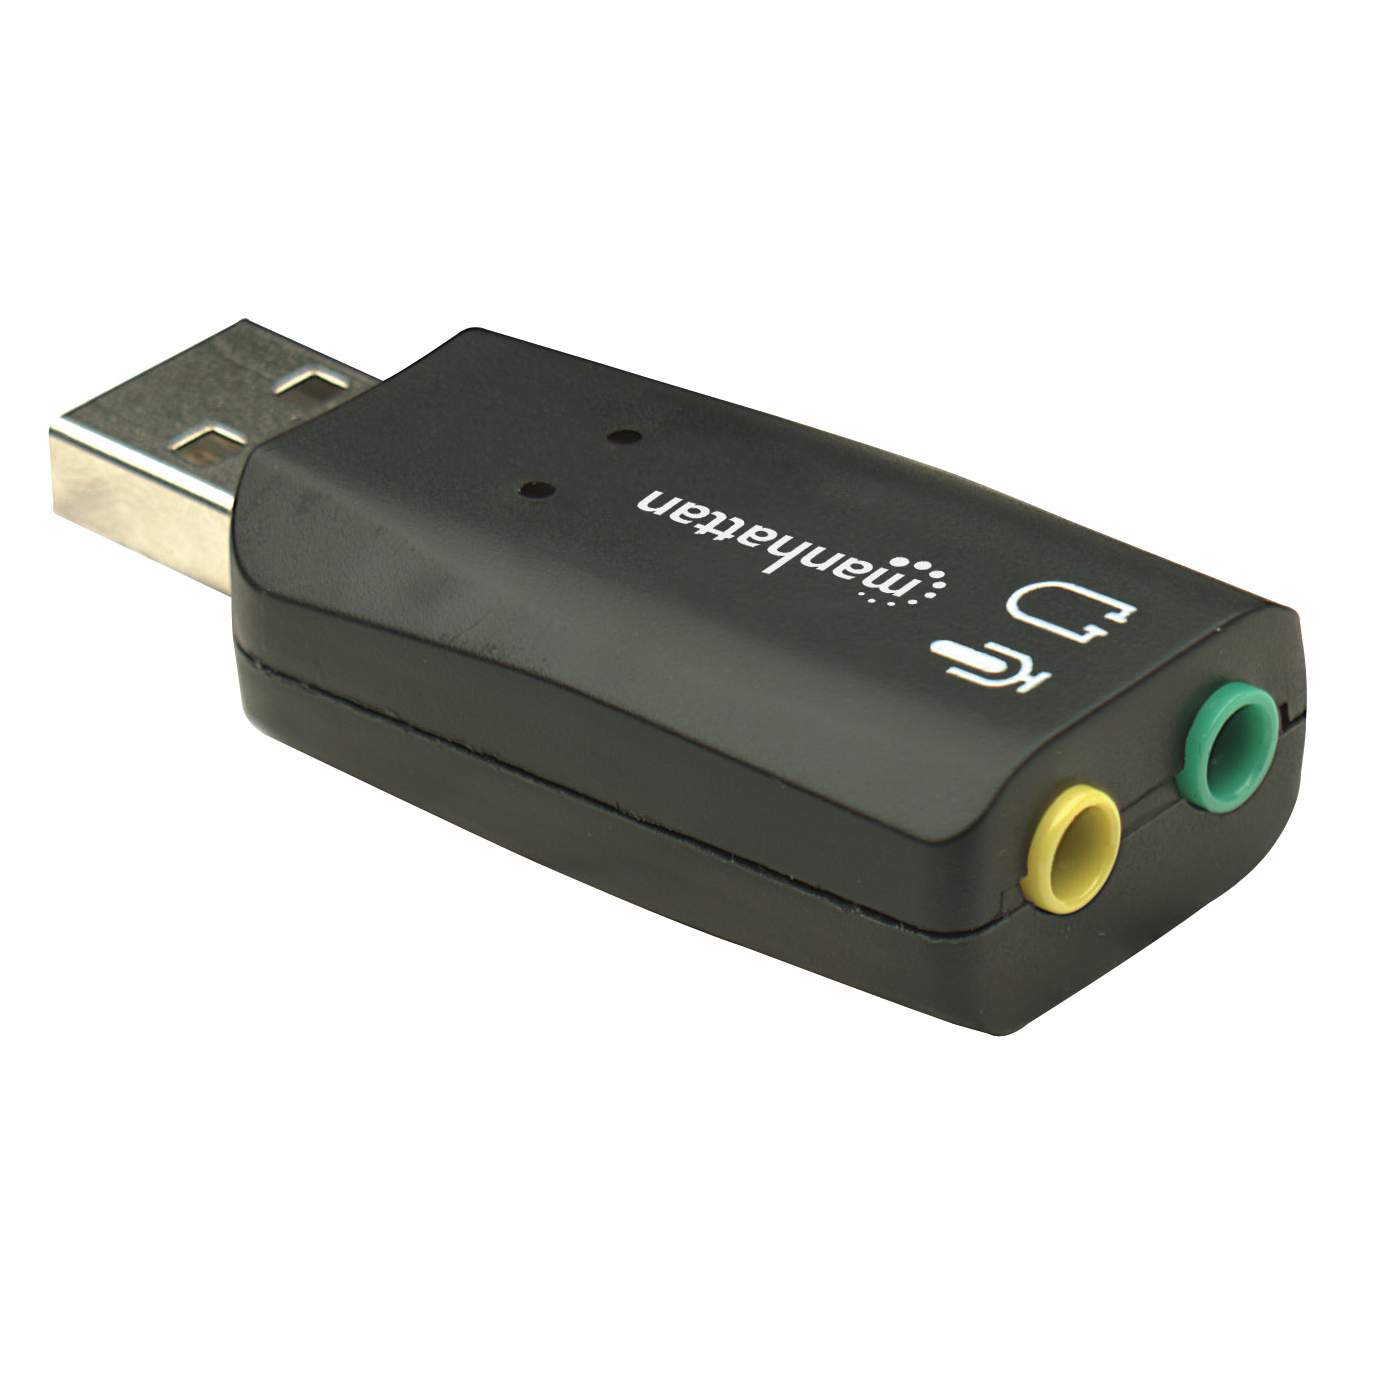 Adaptador SAMSUNG Audio USB C - 3.5 Mm Hembra A USB Tipo C Macho